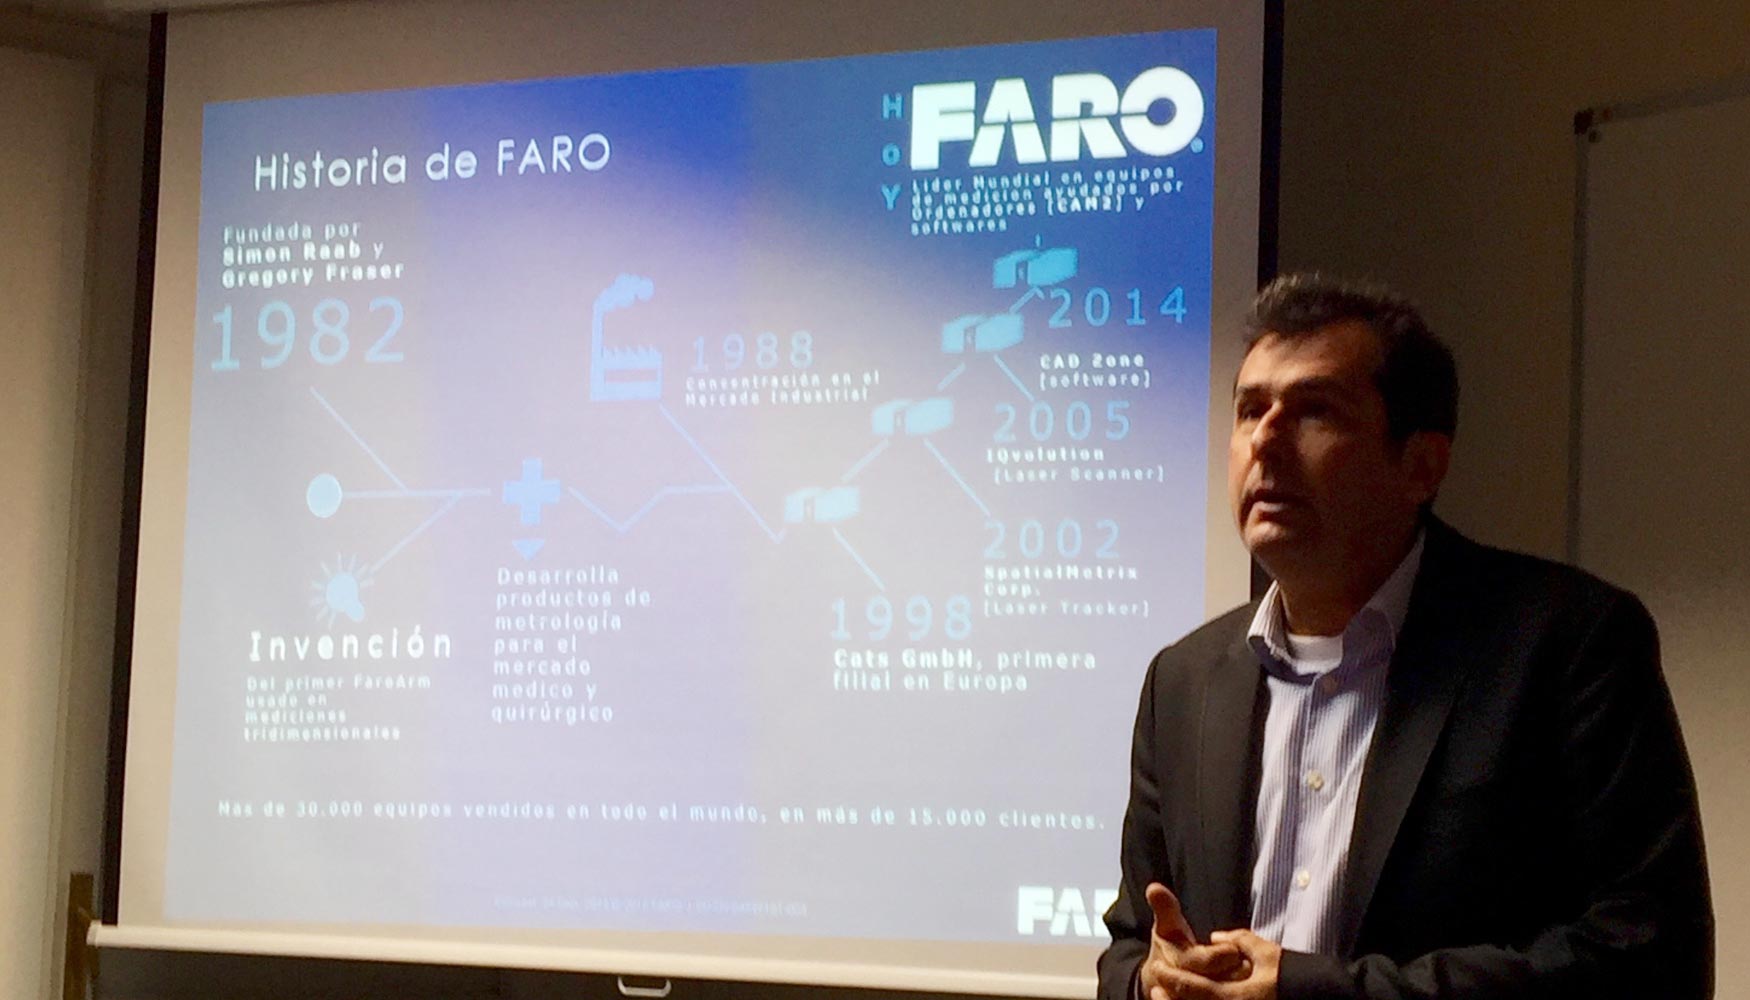 Leonardo Marques, metrology business manager de Faro